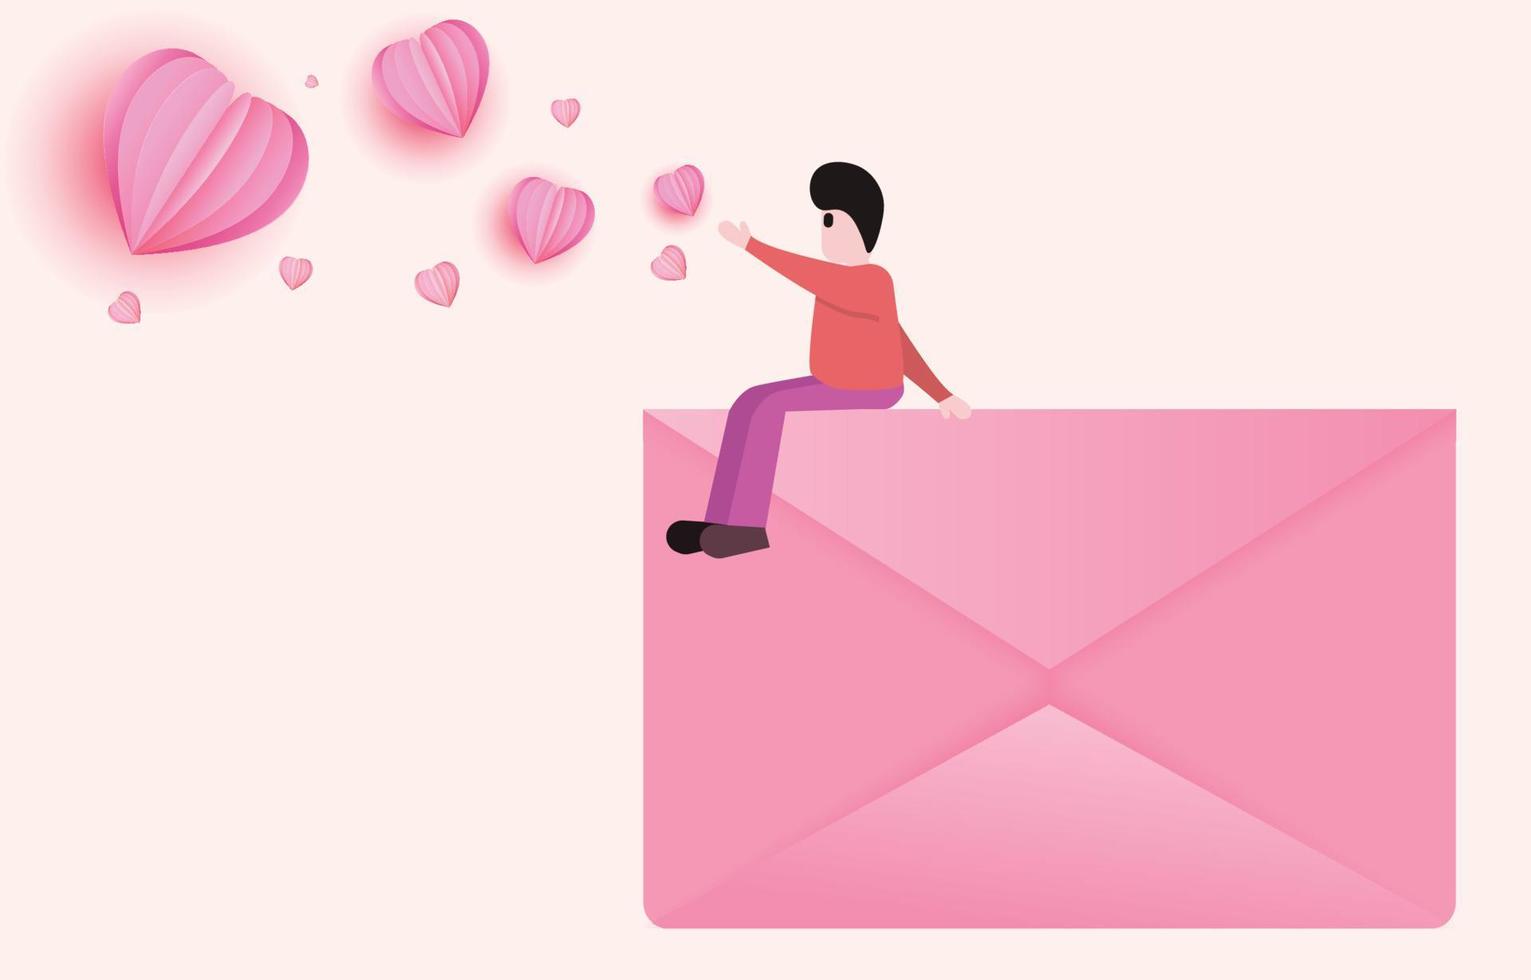 homem sentado na carta rosa decorada com recortes de papel em forma de coração vermelho e correio. ideia de ilustração para o dia dos namorados ou envio de mensagens de amor. envelope vetorial vetor